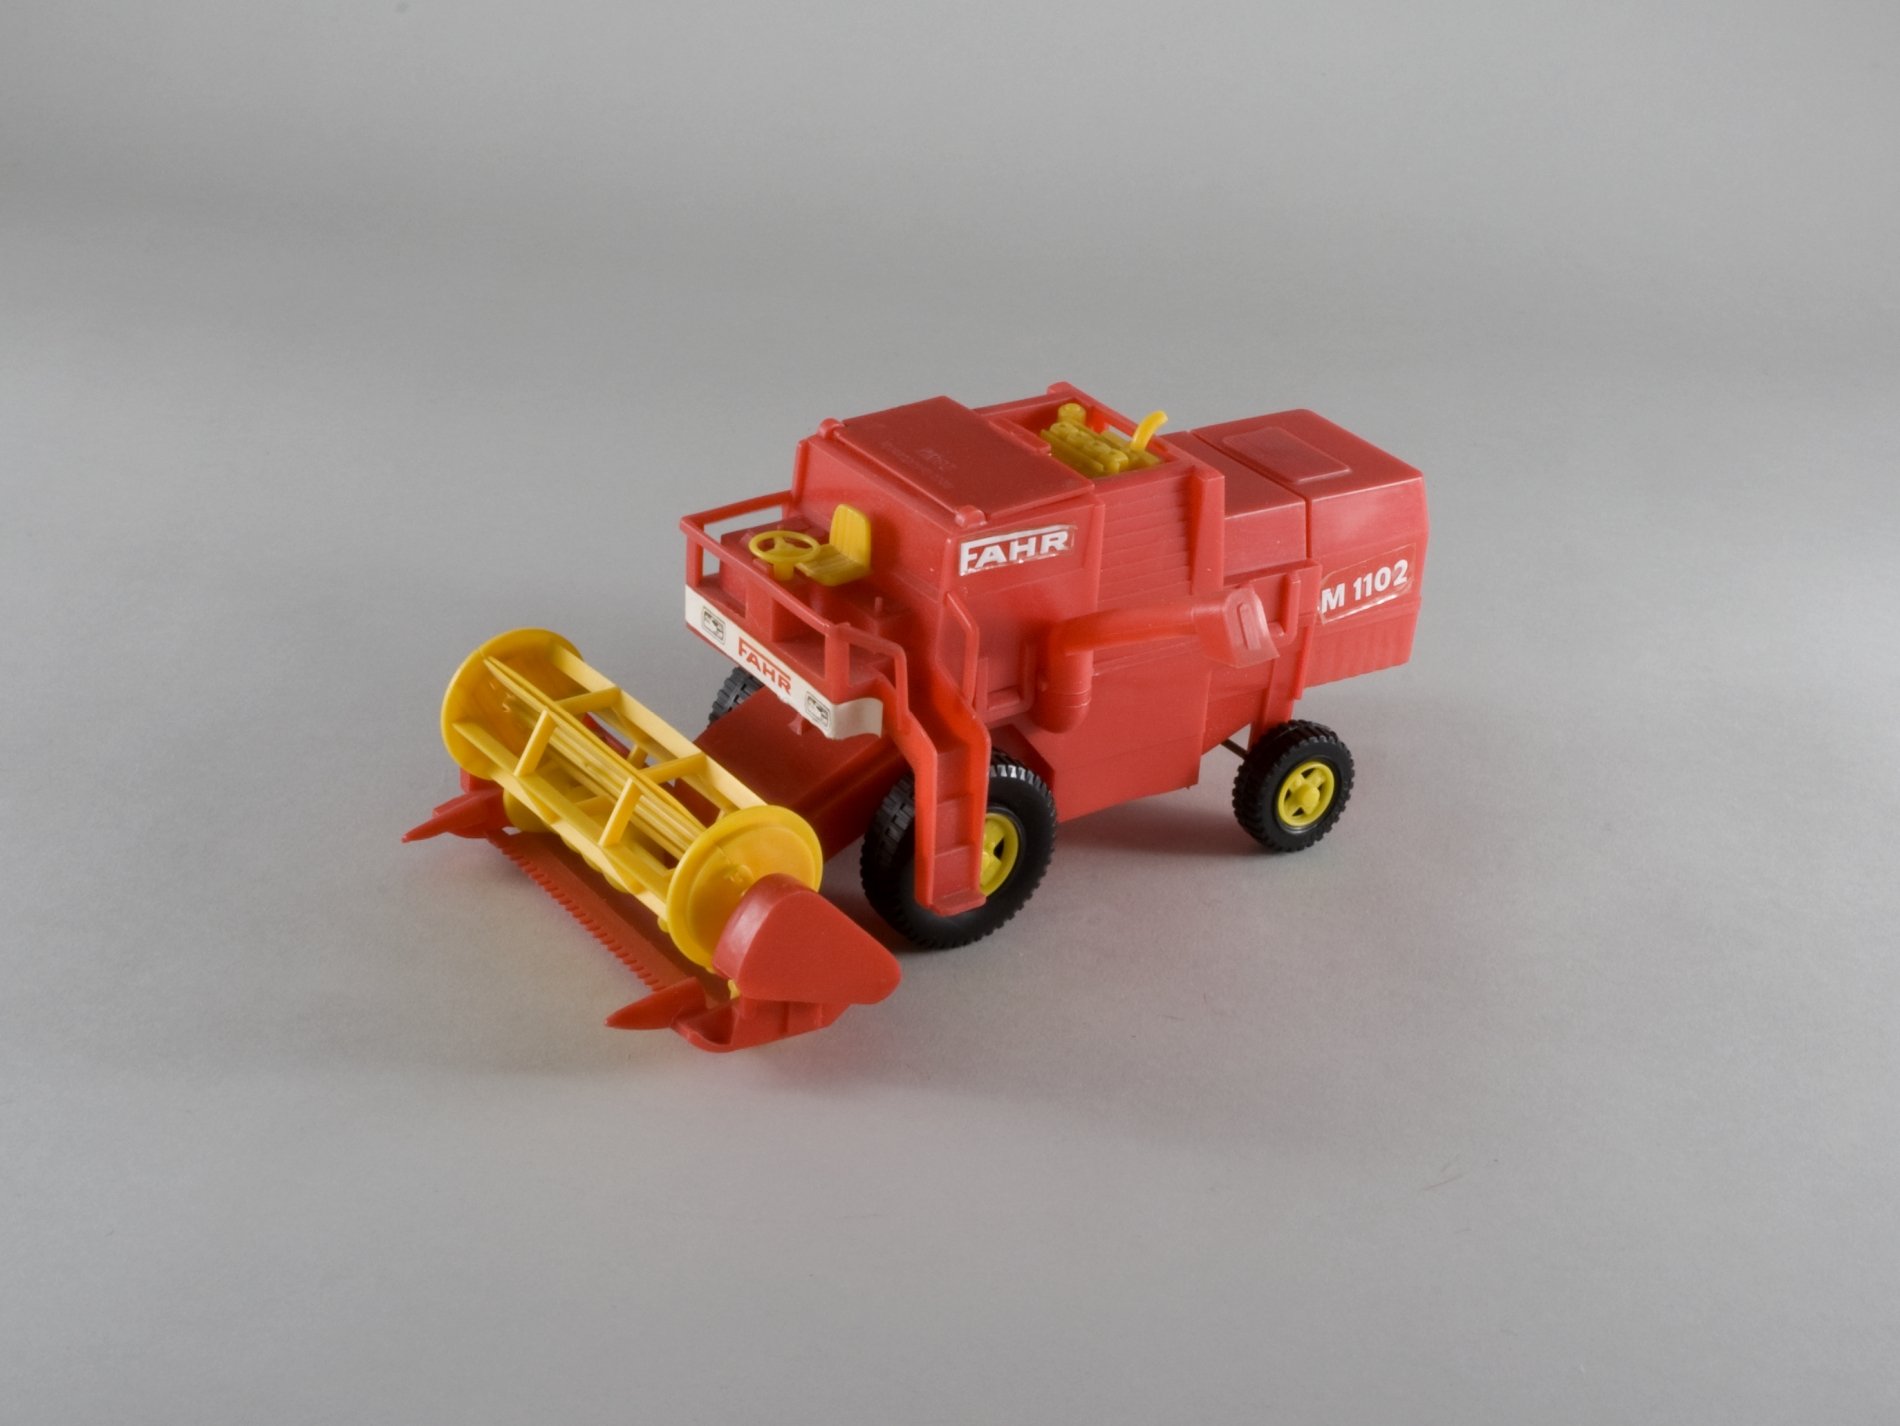 Spielzeugmodell: "Fahr" - Mähdrescher (Stiftung Domäne Dahlem - Landgut und Museum, Weiternutzung nur mit Genehmigung des Museums CC BY-NC-SA)